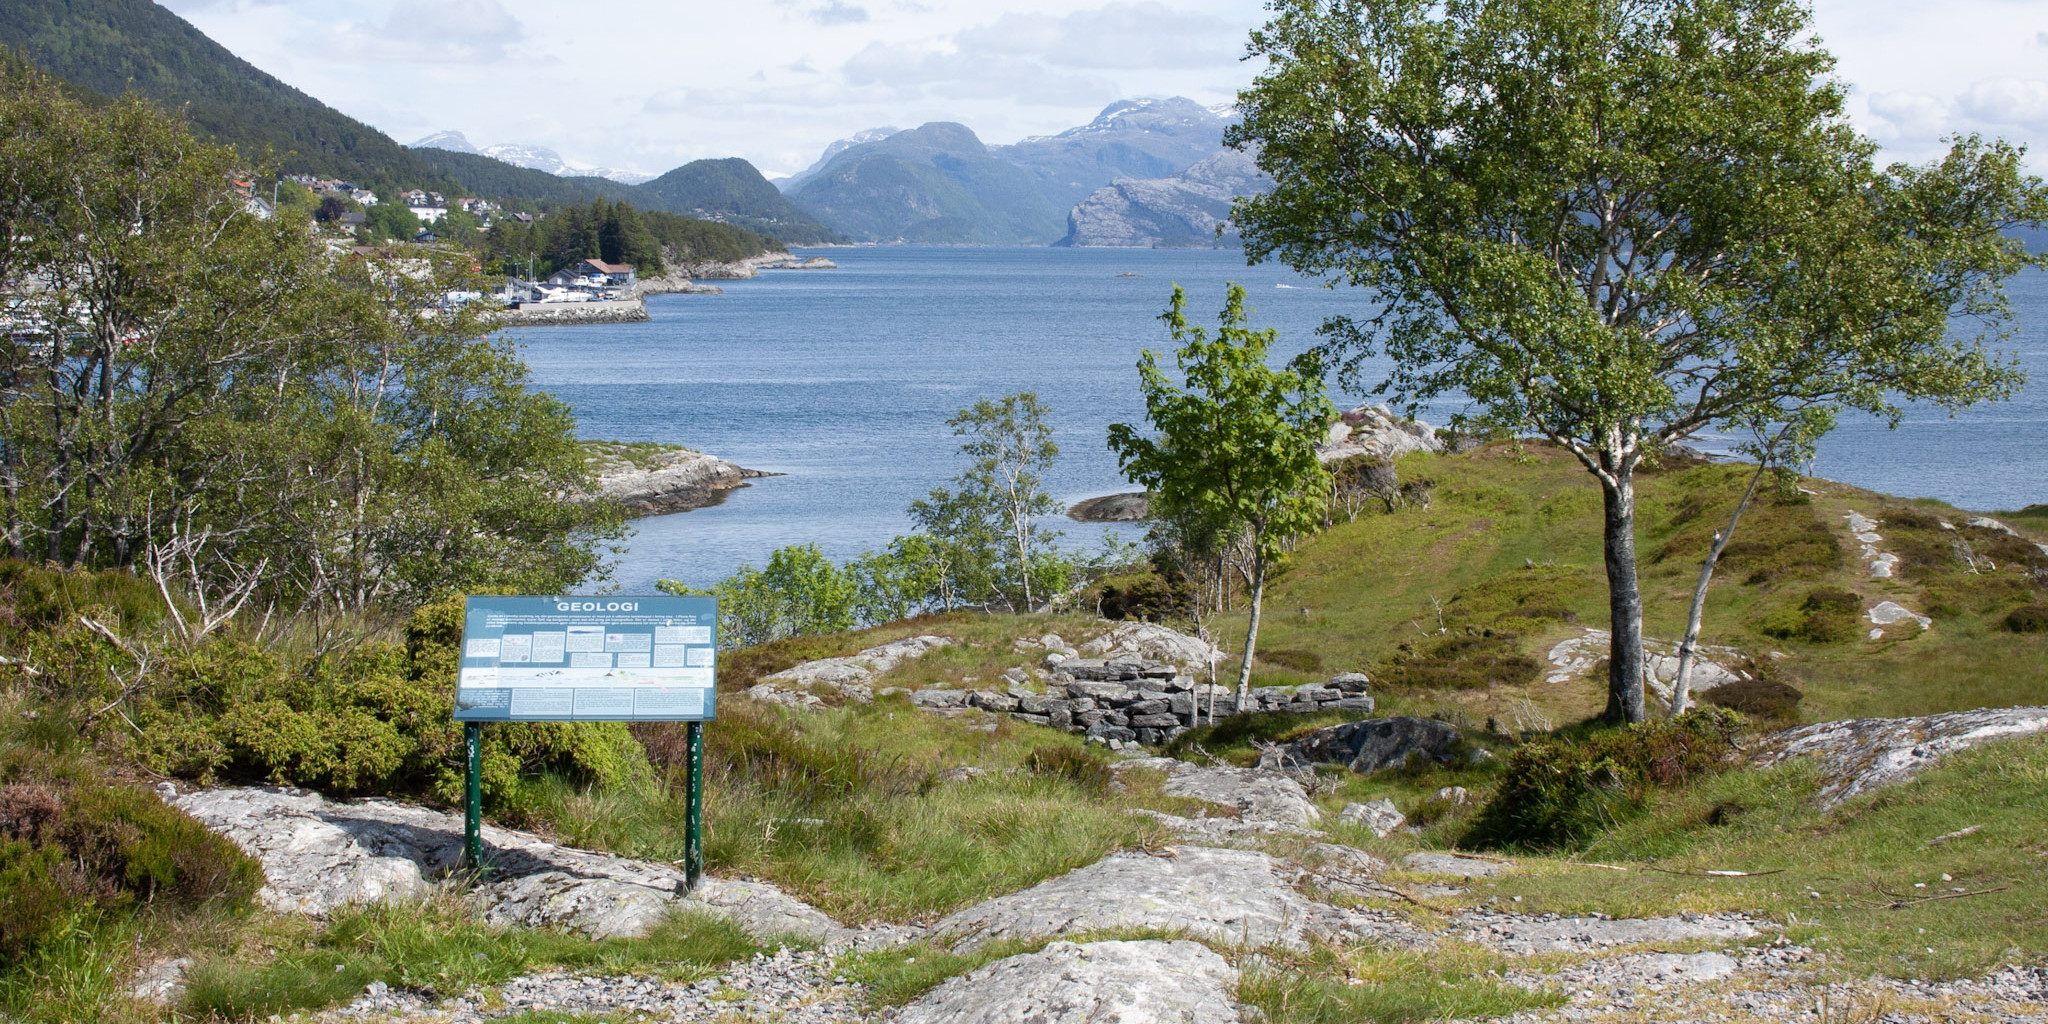 Utsikt over Brendøya, med hustufter, skilt om geografi og bjørketrær. Hav og fjell i bakgrunn.